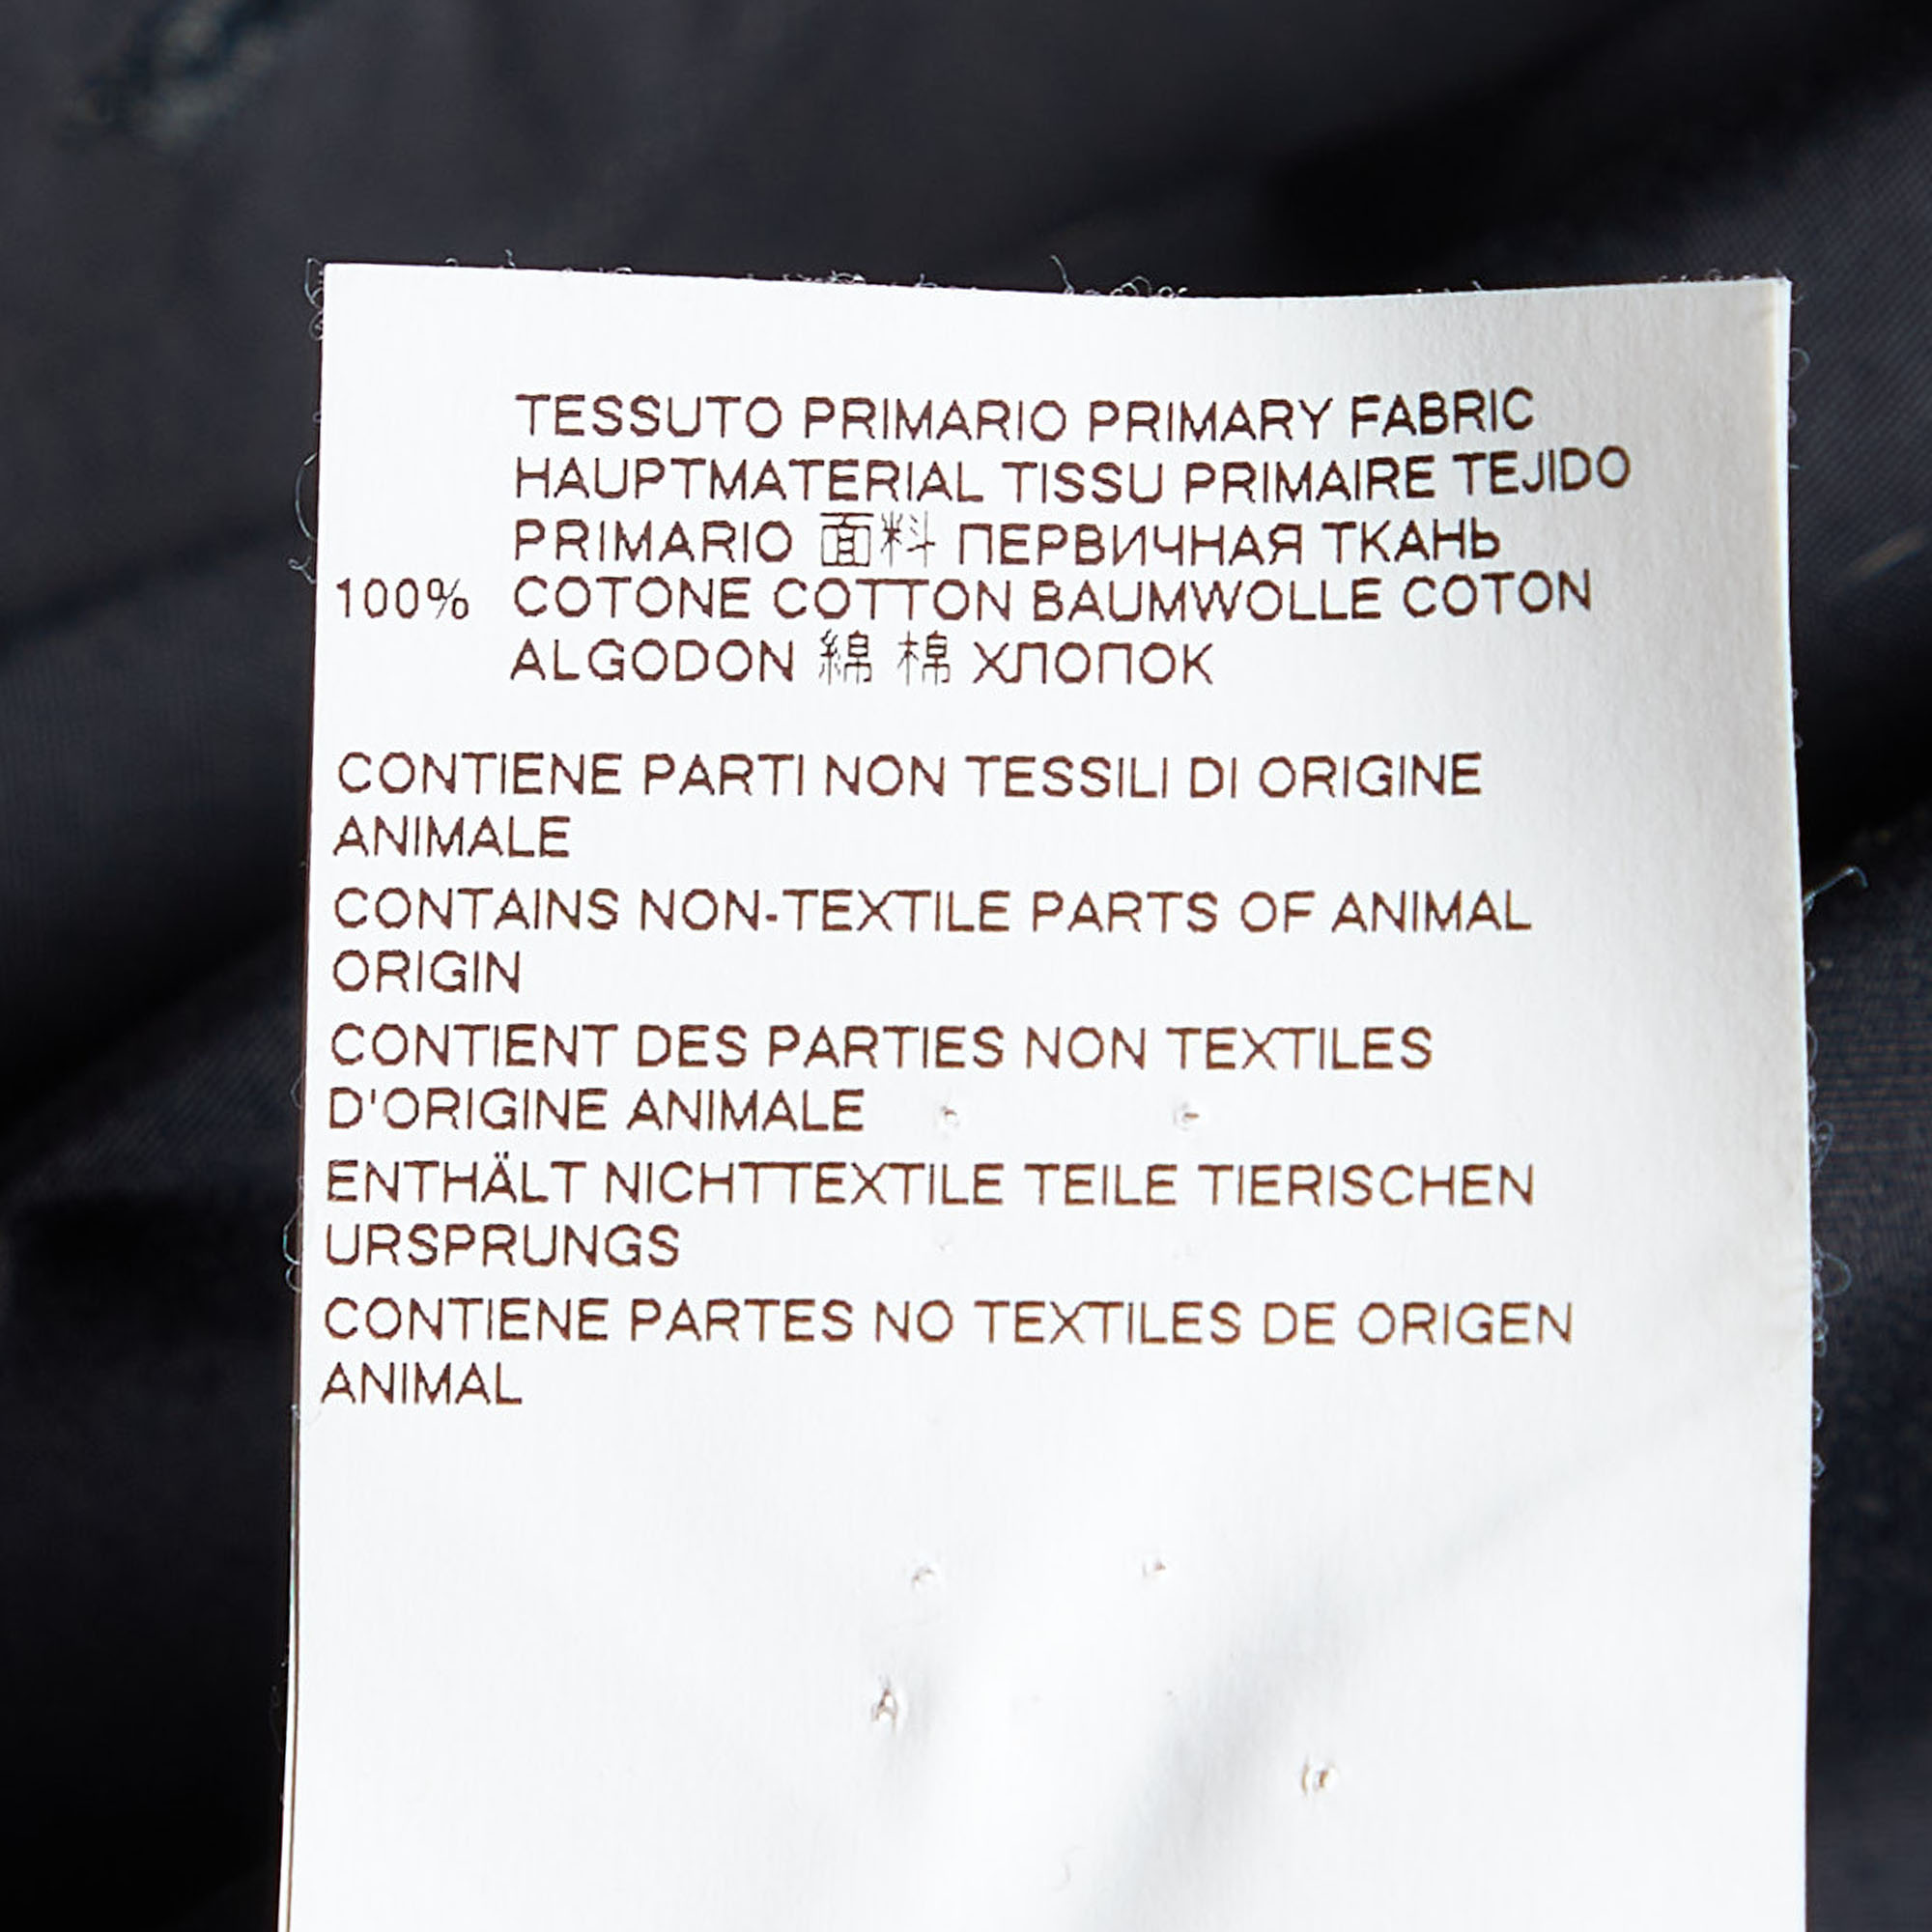 Dsquared2 Black Cotton Chain Detail Punk Shirt M